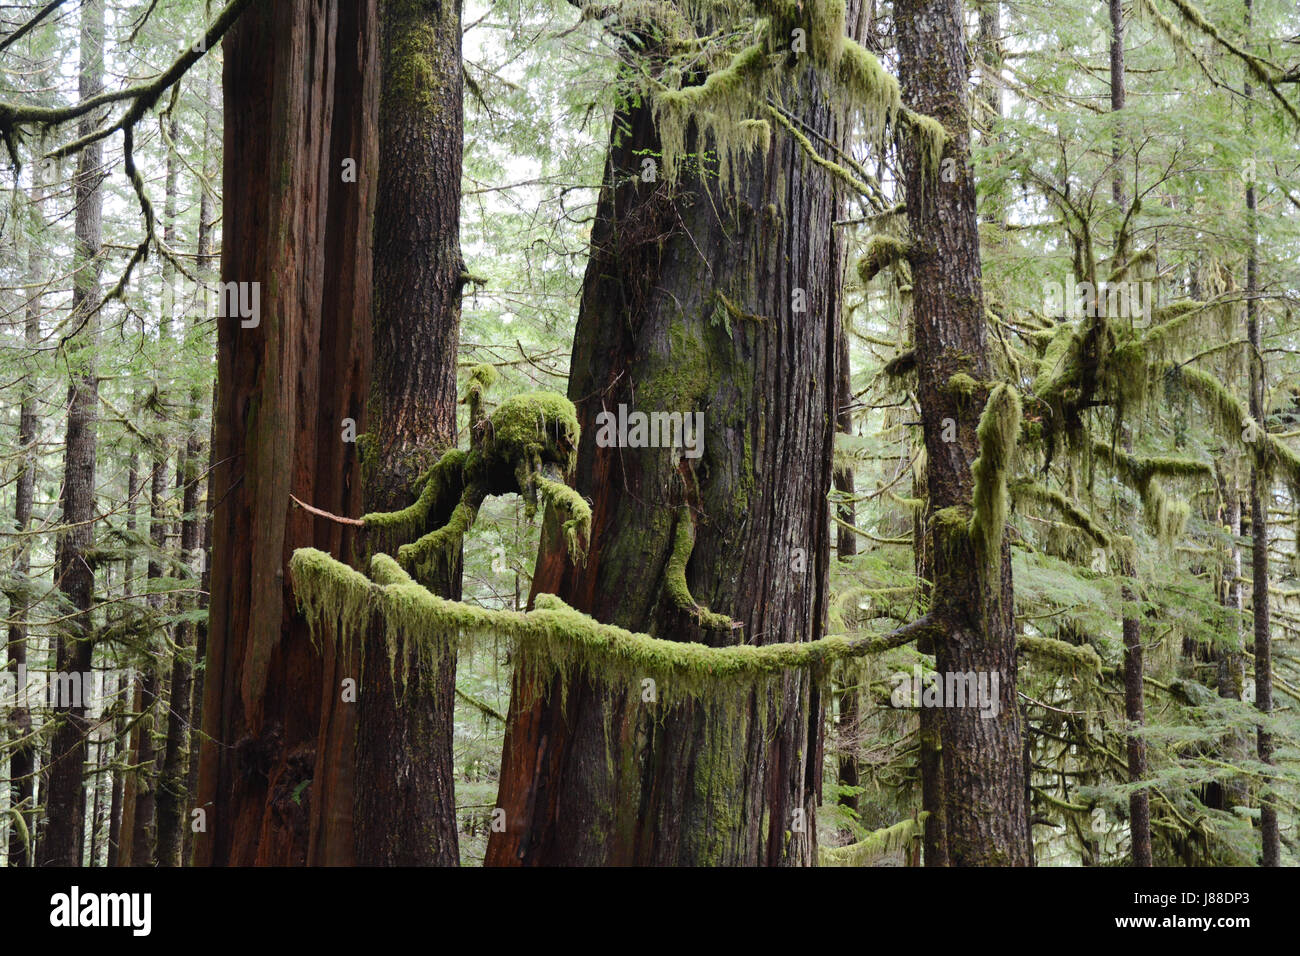 Couverts de lichens, les vieux peuplements de cèdre rouge de l'arbres à Avatar Grove, une ancienne forêt tropicale sur l'île de Vancouver, Colombie-Britannique, Canada Banque D'Images